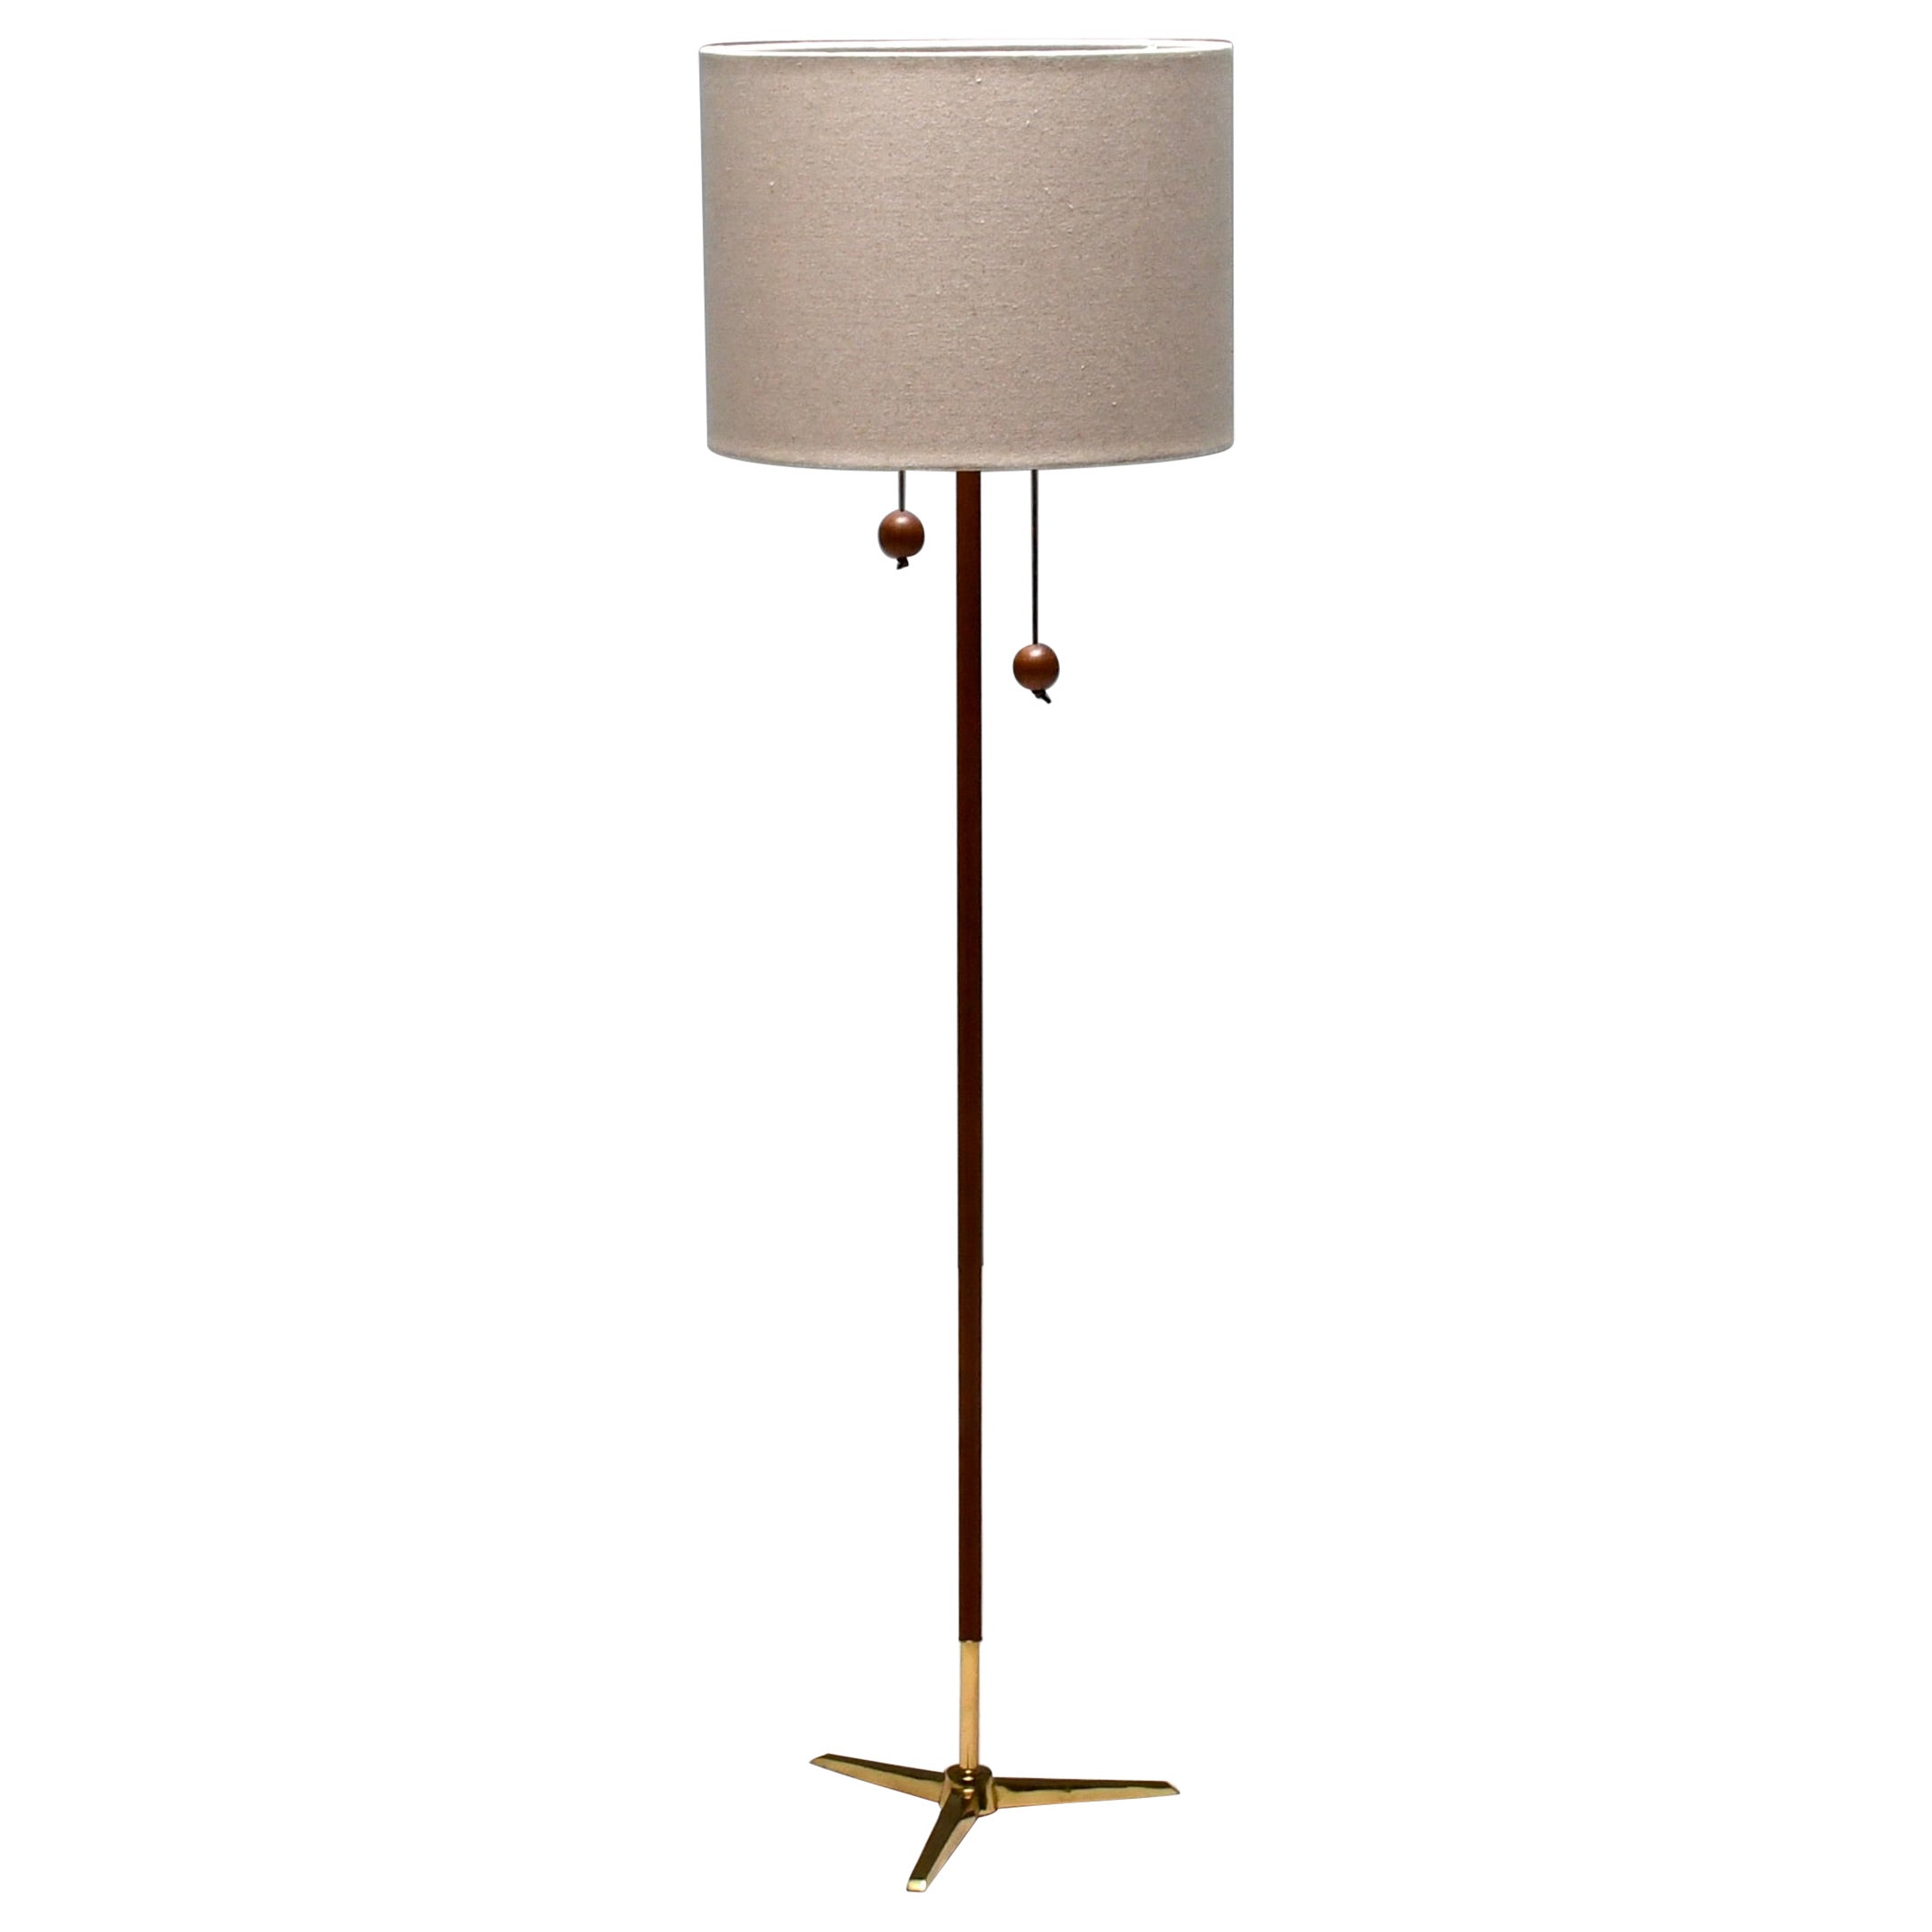 Tripod Floor Lamp by Fog & Mørup made of Teak and Brass, Denmark 1960s For Sale